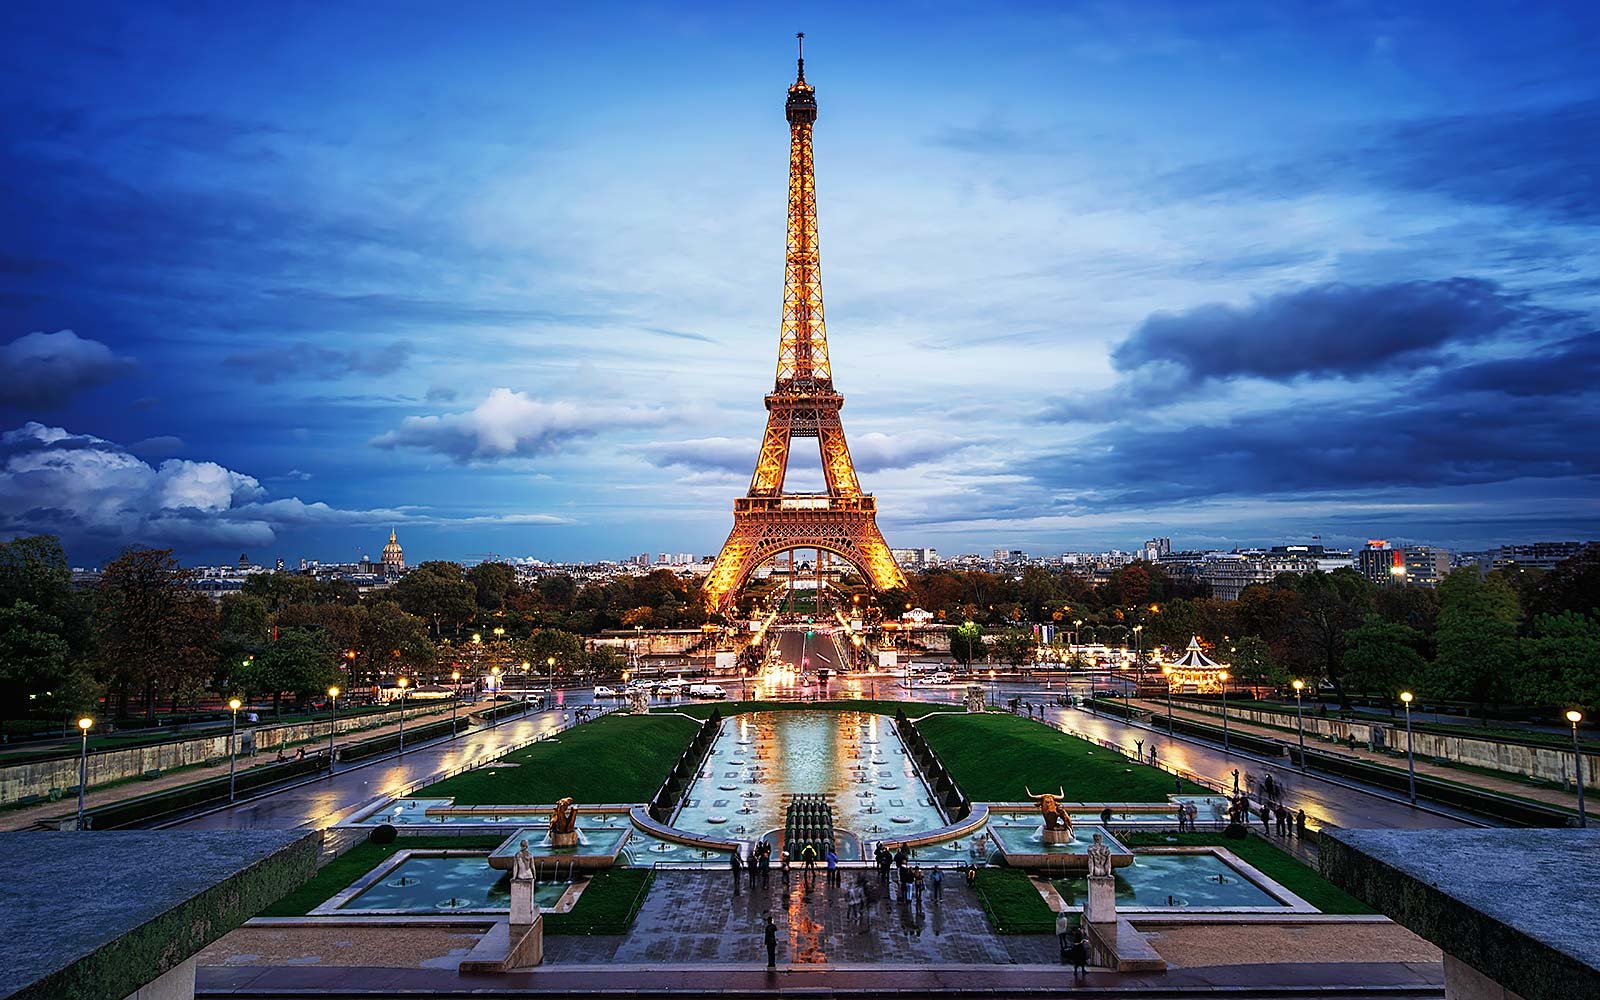 حقایق ناگفته و جالب در مورد برج ایفل در پاریس که نمی دانستید ! +تصاویر